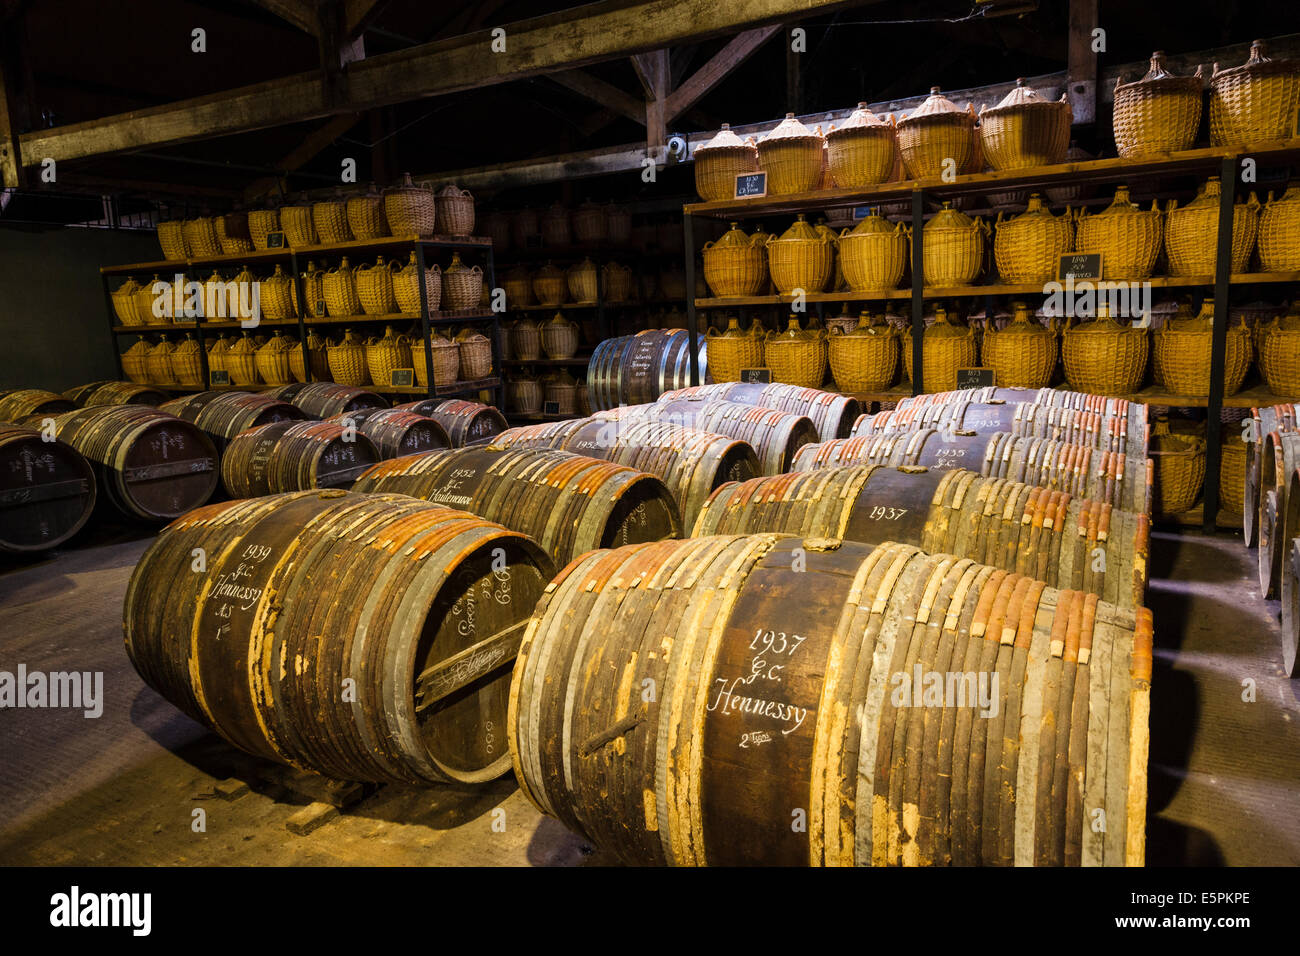 Hennessy magazzino invecchiamento dove eaux-de-vie viene memorizzato in botti di rovere a maturare prima di miscelazione. Foto Stock